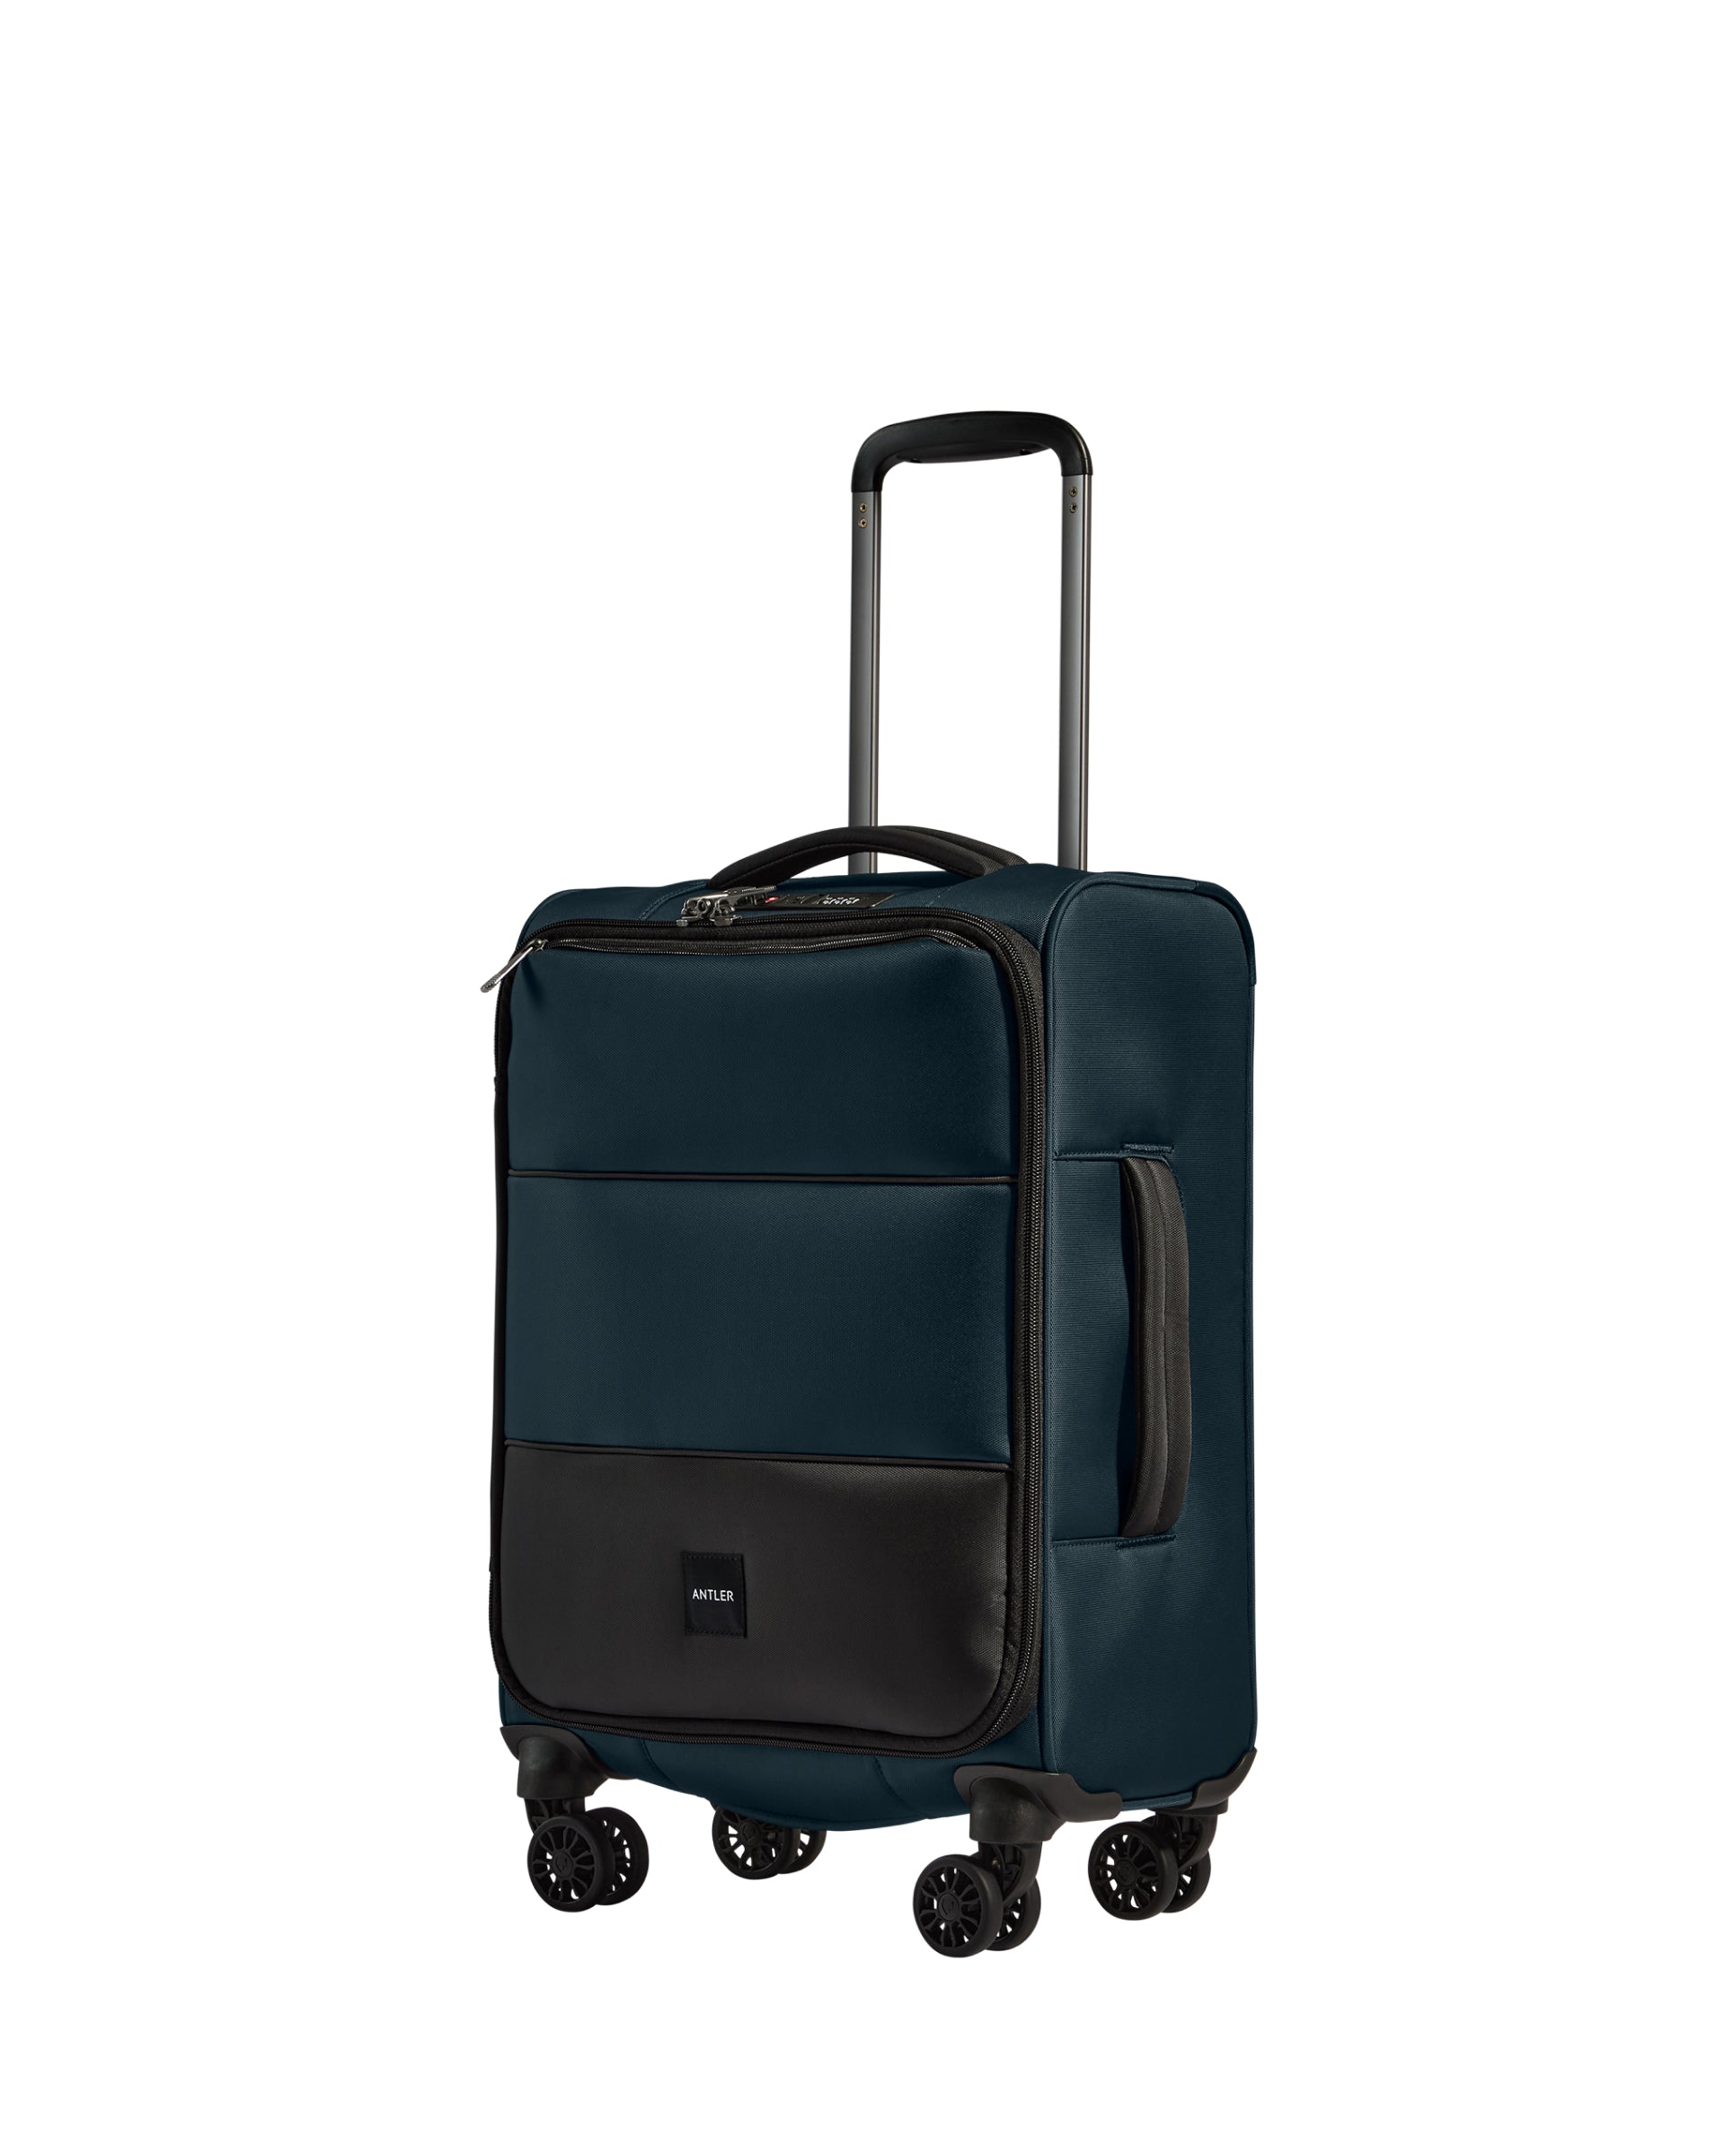 View Antler Soft Stripe Cabin Suitcase In Navy Indigo Size 20cm x 55cm x 35cm information